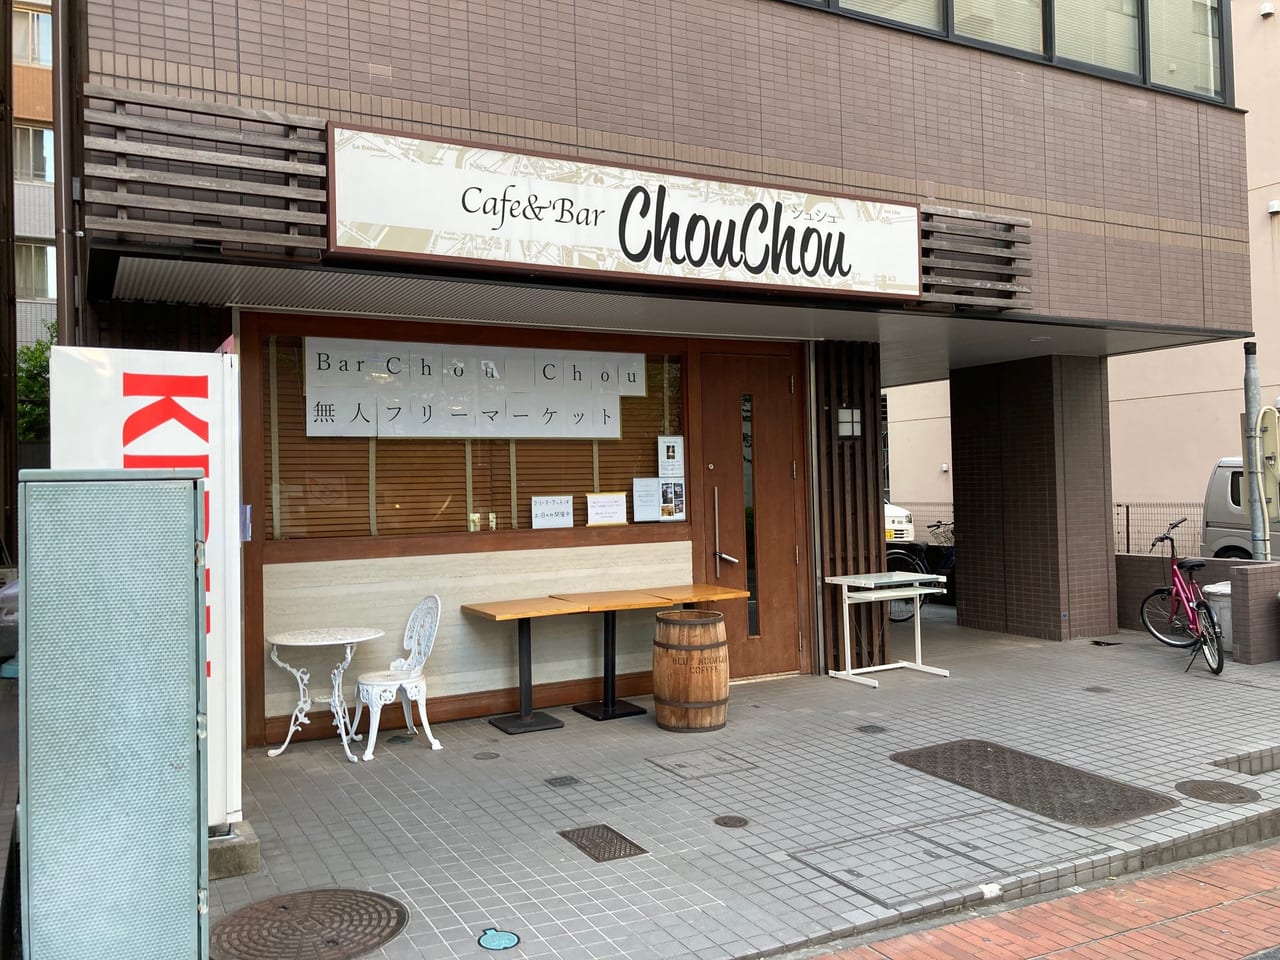 横浜市都筑区 治安が良い町だからこそ センター南cafe Bar Chouchouで 無人フリーマーケットが行われていました 号外net 横浜 市都筑区